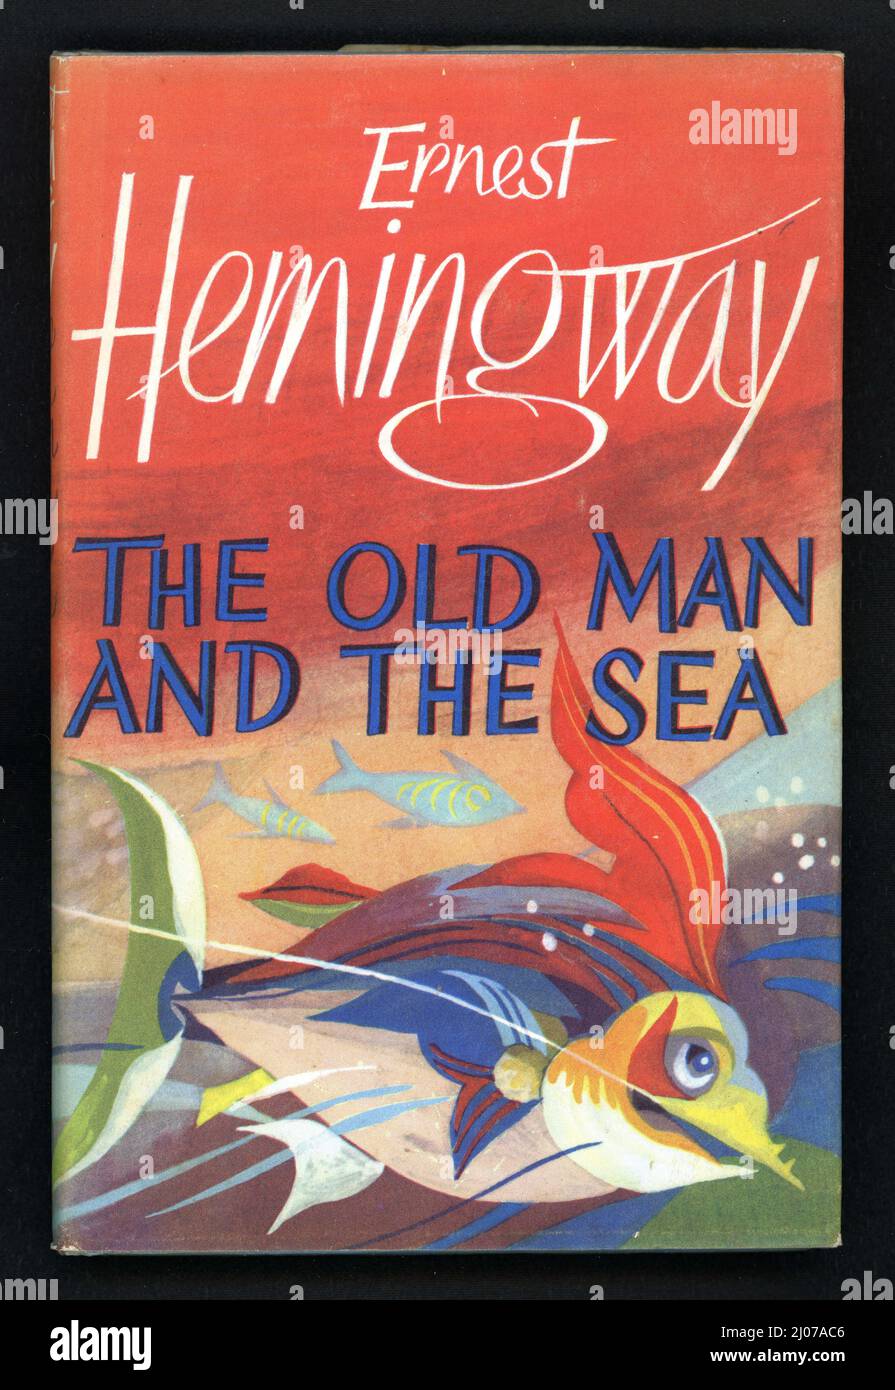 Magnifique livre original rétro / milieu du siècle illustré couverture de «The Old Man and the Sea», publié en 1952 écrit par le célèbre auteur américain, Ernest Hemingway. Illustré par Hans Tisdall. Première publication britannique. Banque D'Images